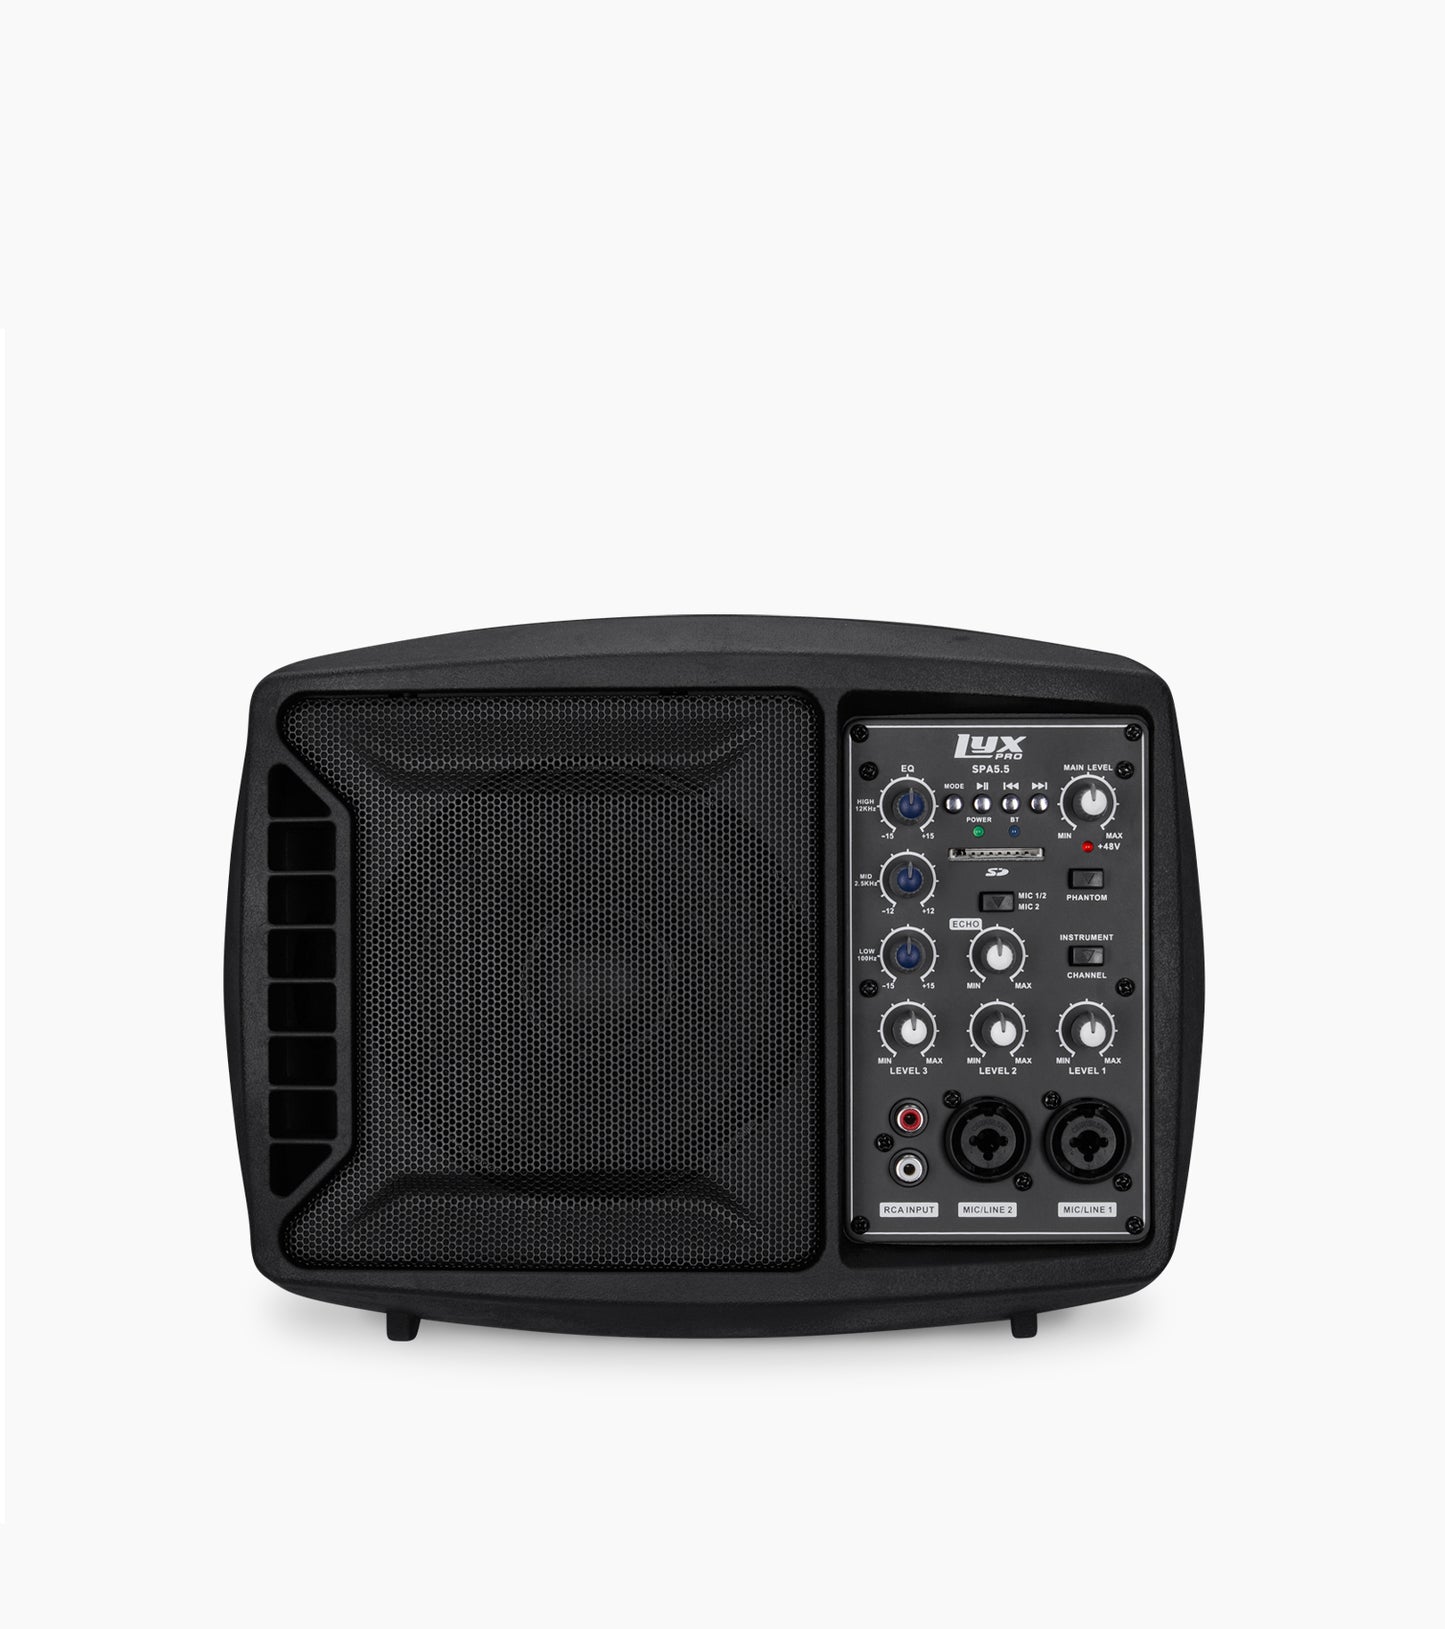 LyxPro Small PA/Speaker Monitor